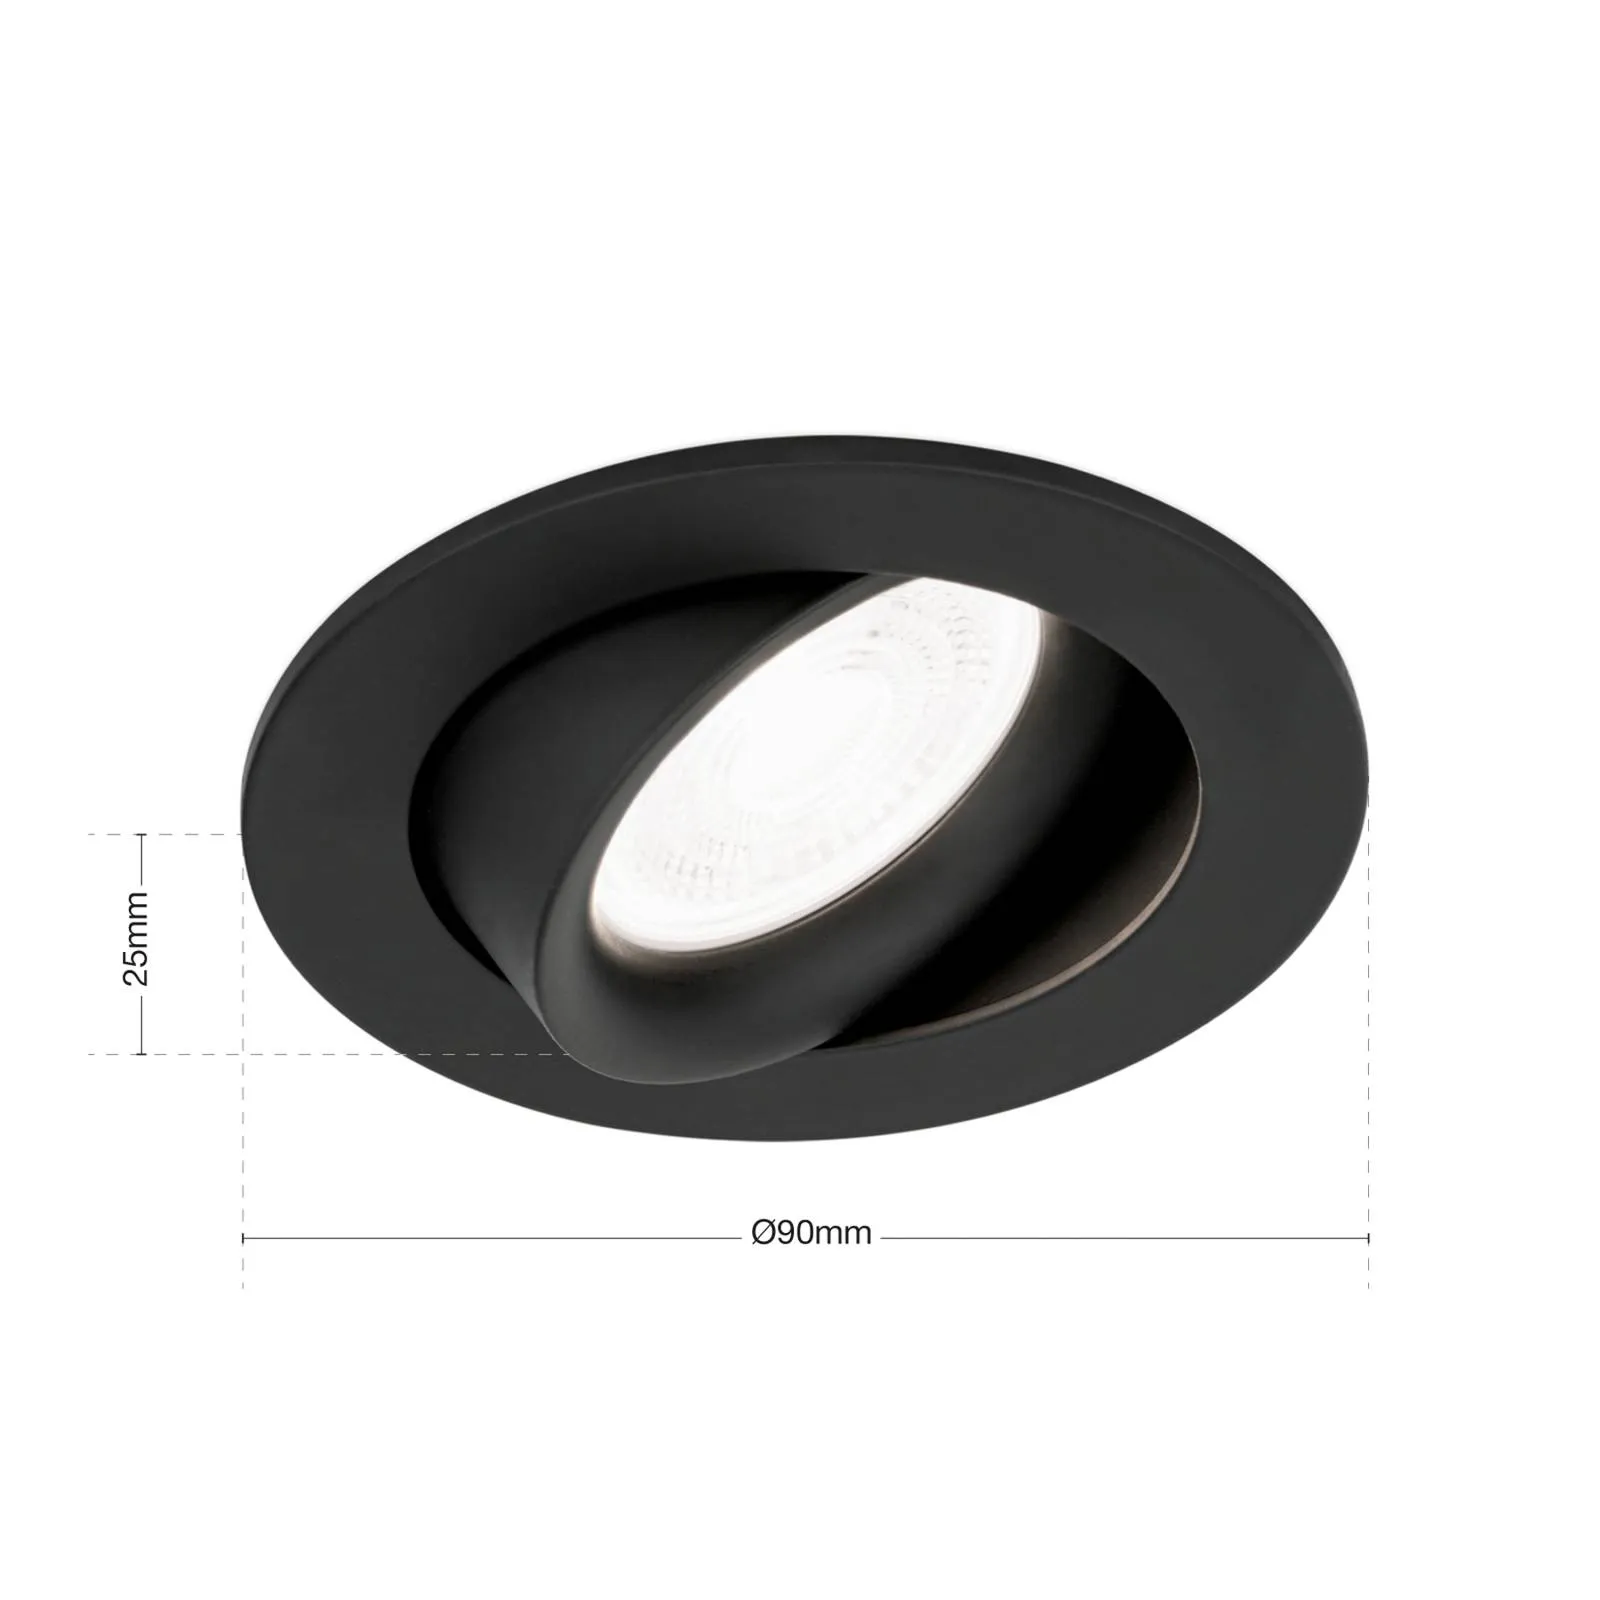 ORION Spot incasso Choice, alluminio, orientabile, nero